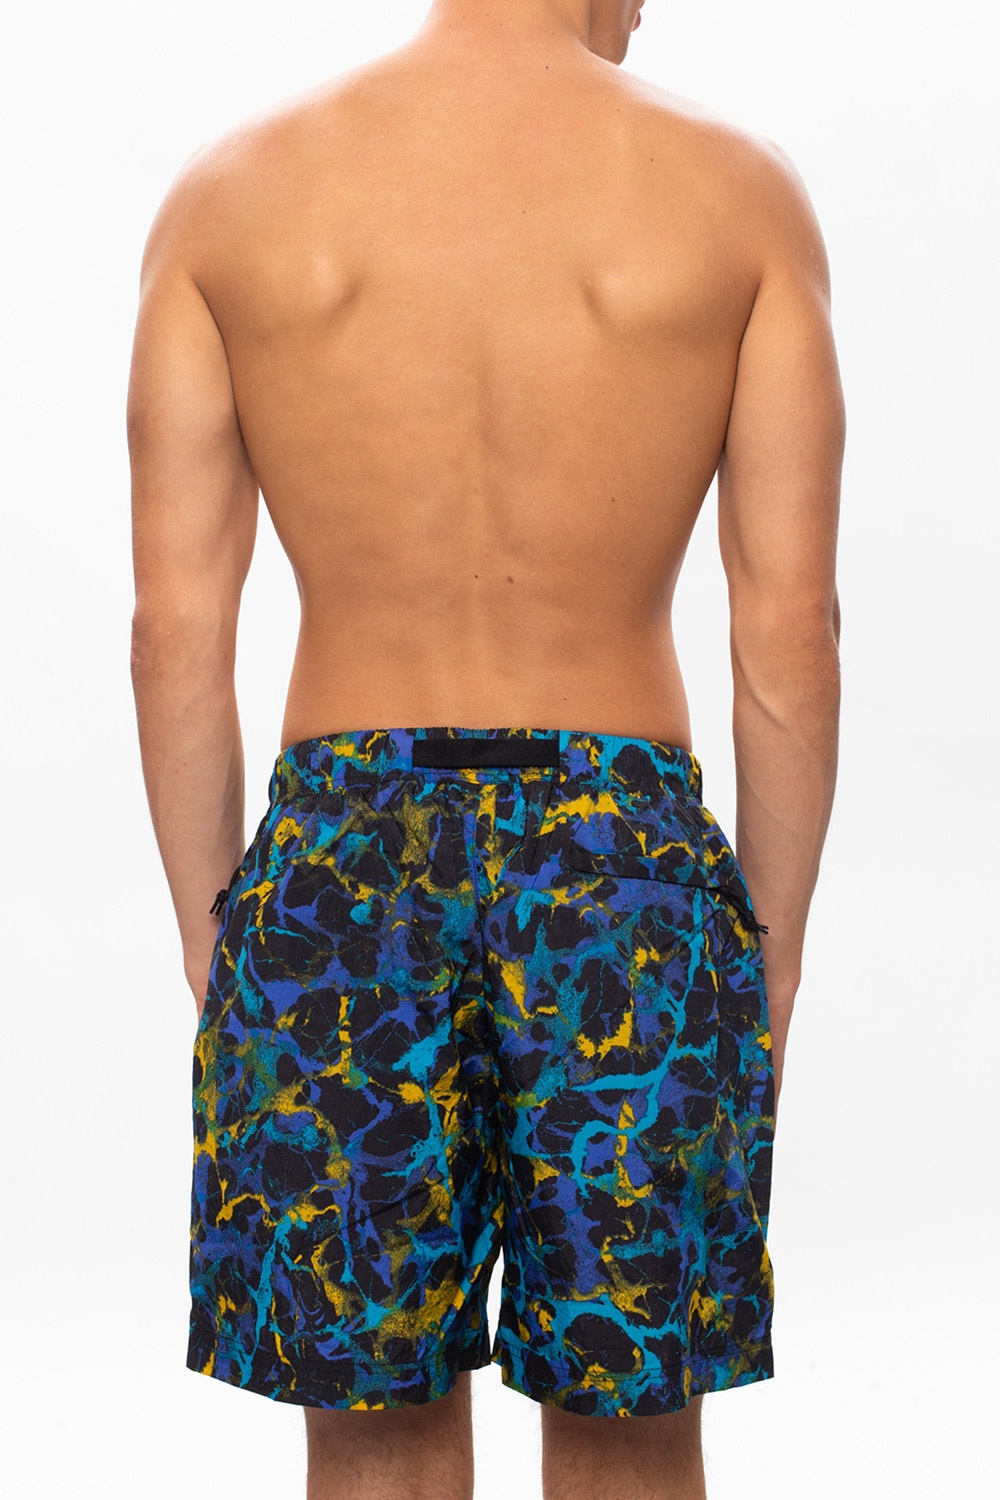 ACG' patterned swim shorts Nike - Vitkac US